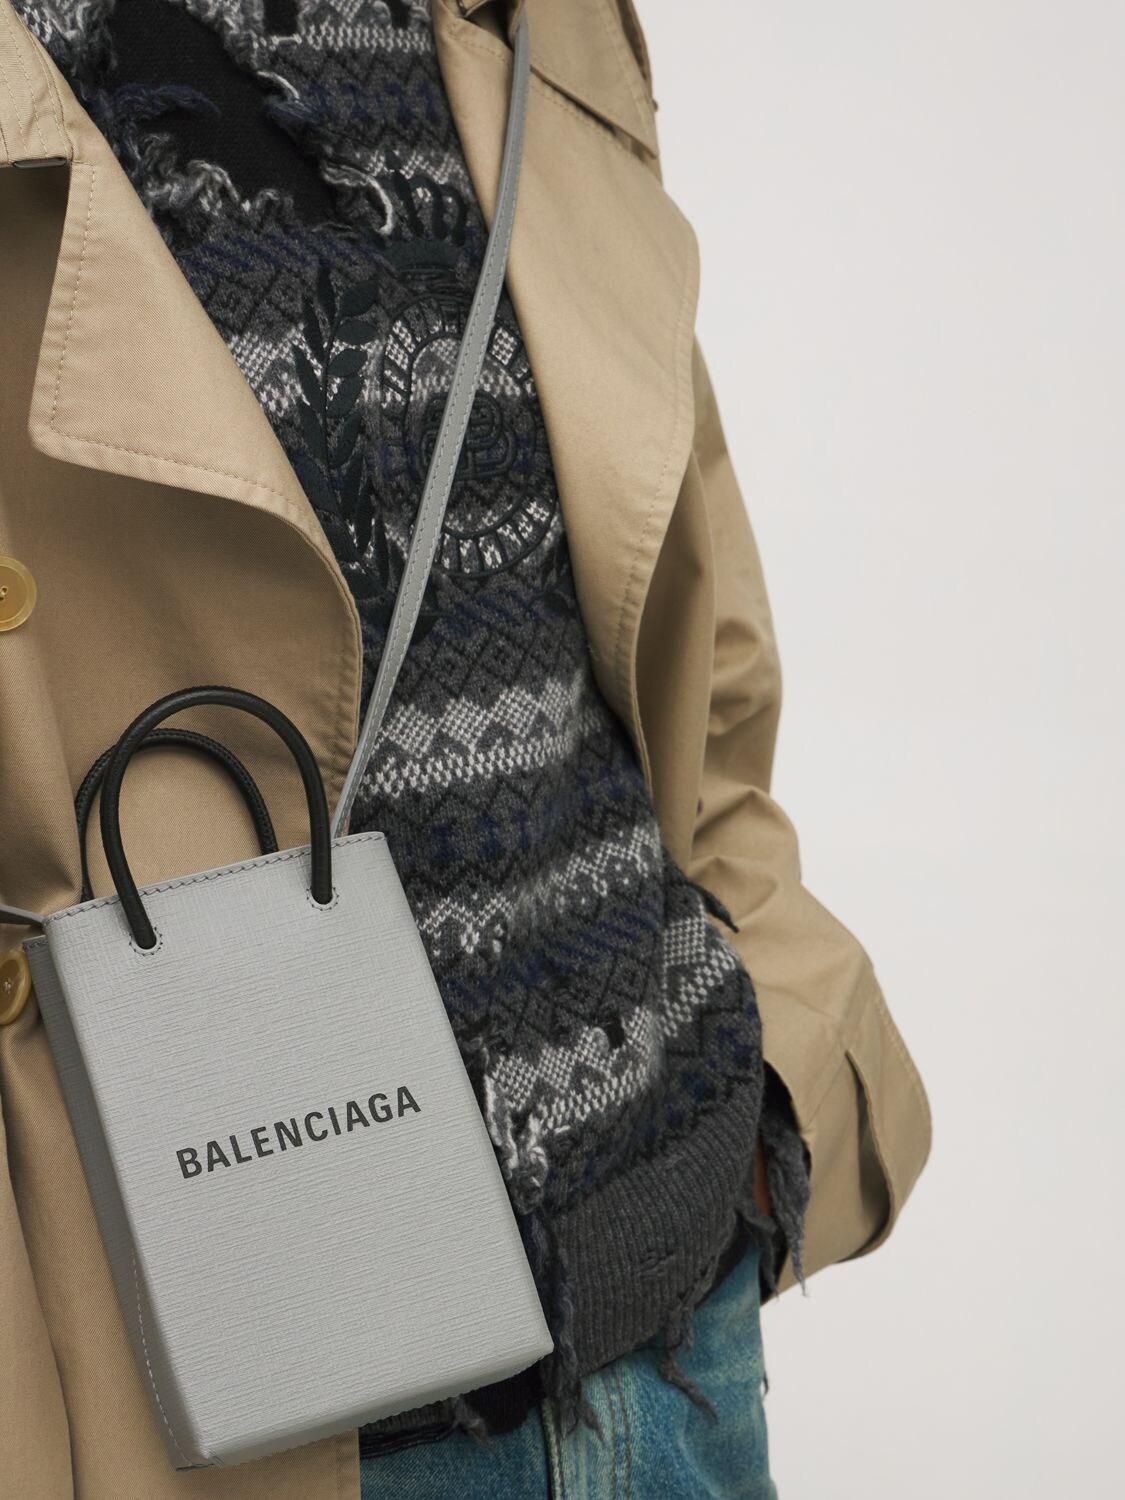 Balenciaga Shopping Phone Bag On Strap in Grey | Lyst Canada